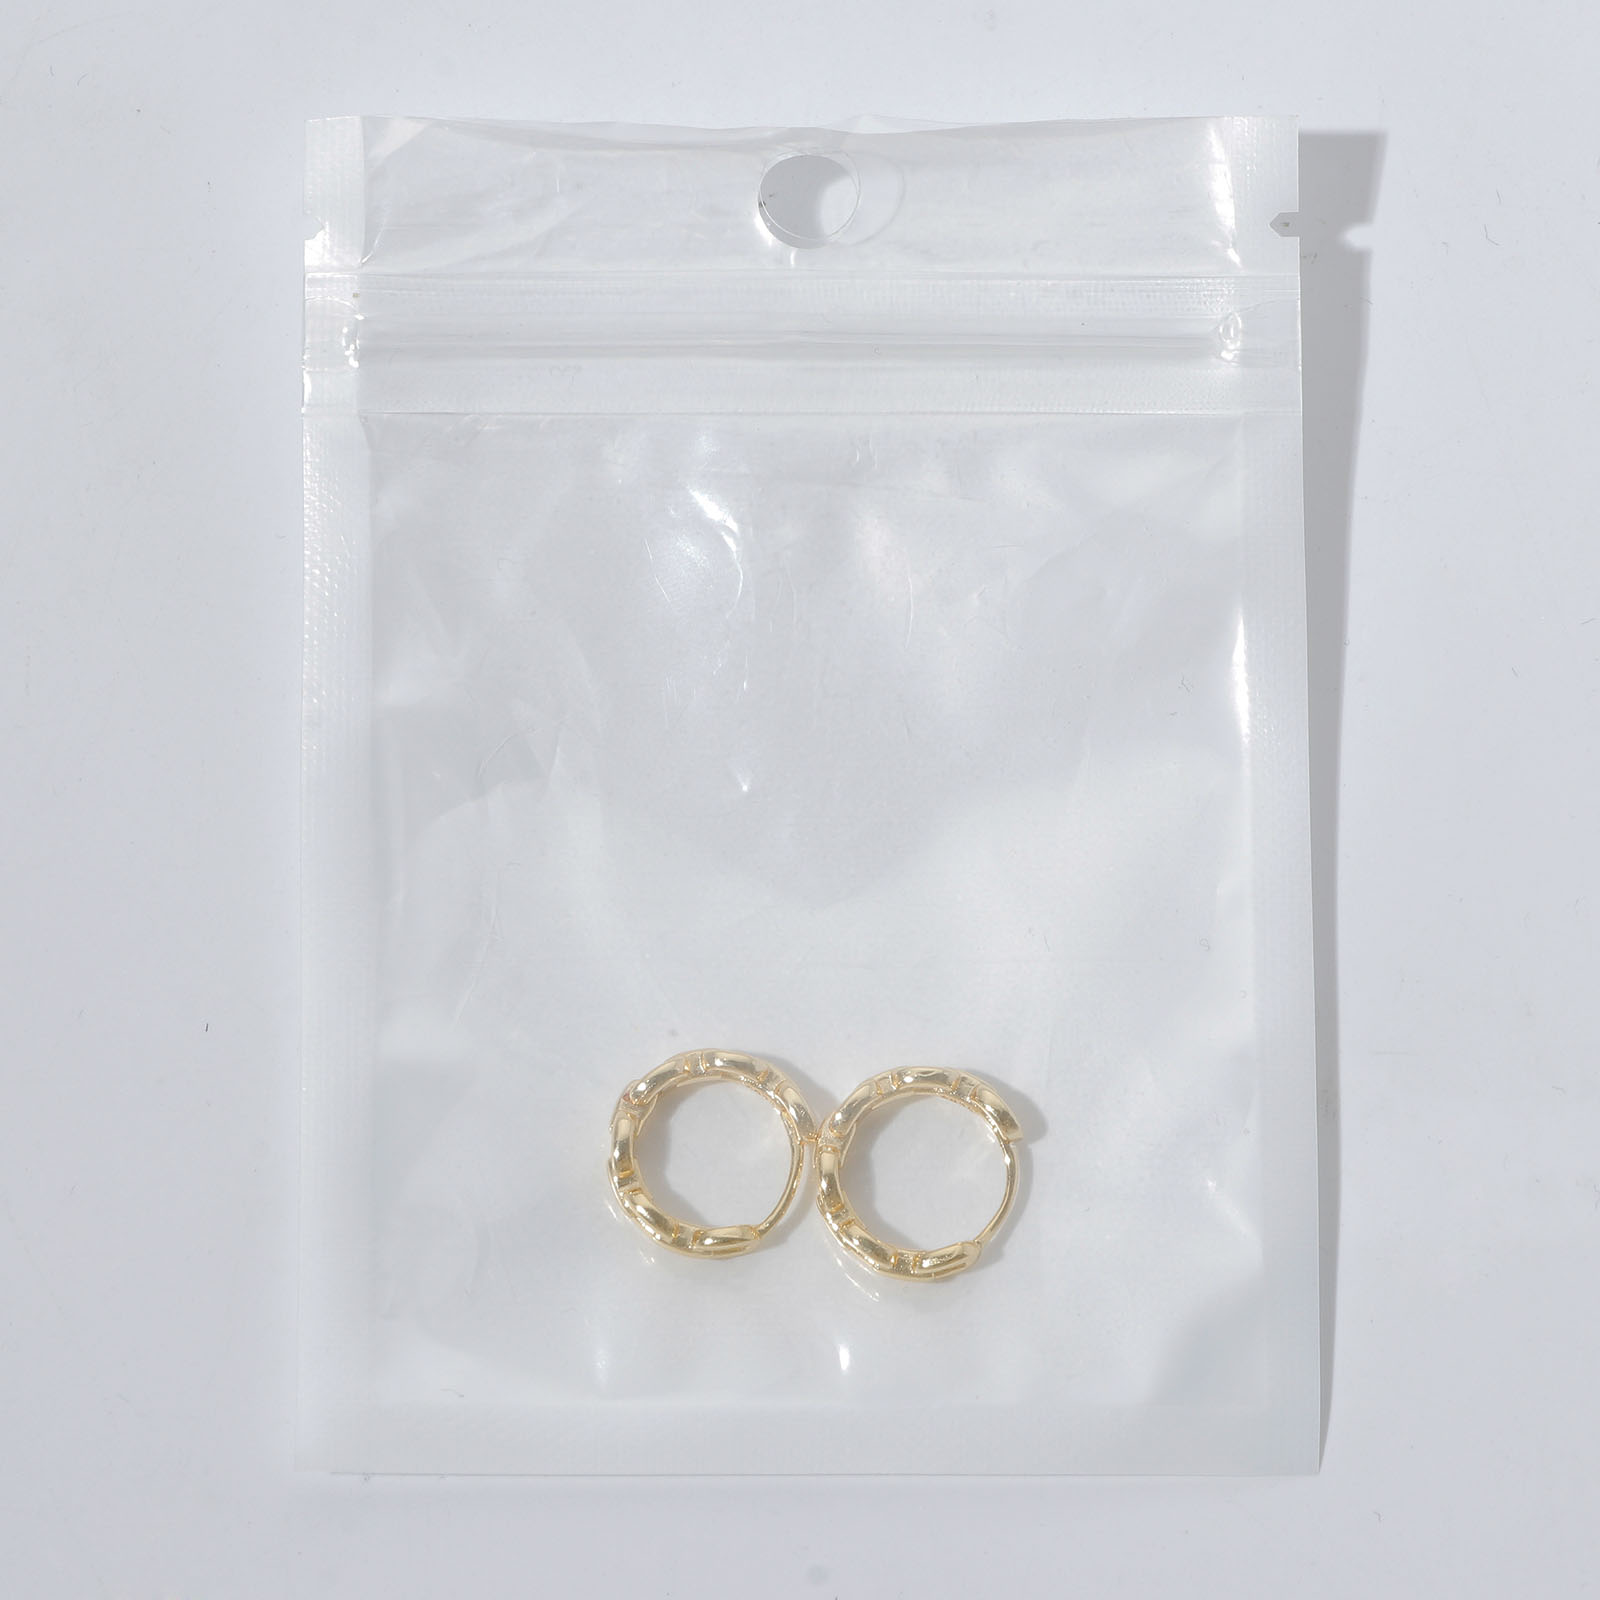 Bild von Umweltfreundlich Einfach und lässig Einfach 18K Vergoldet 304 Edelstahl Geometrie Ohrring Ohrstecker Für Frauen 1 Paar